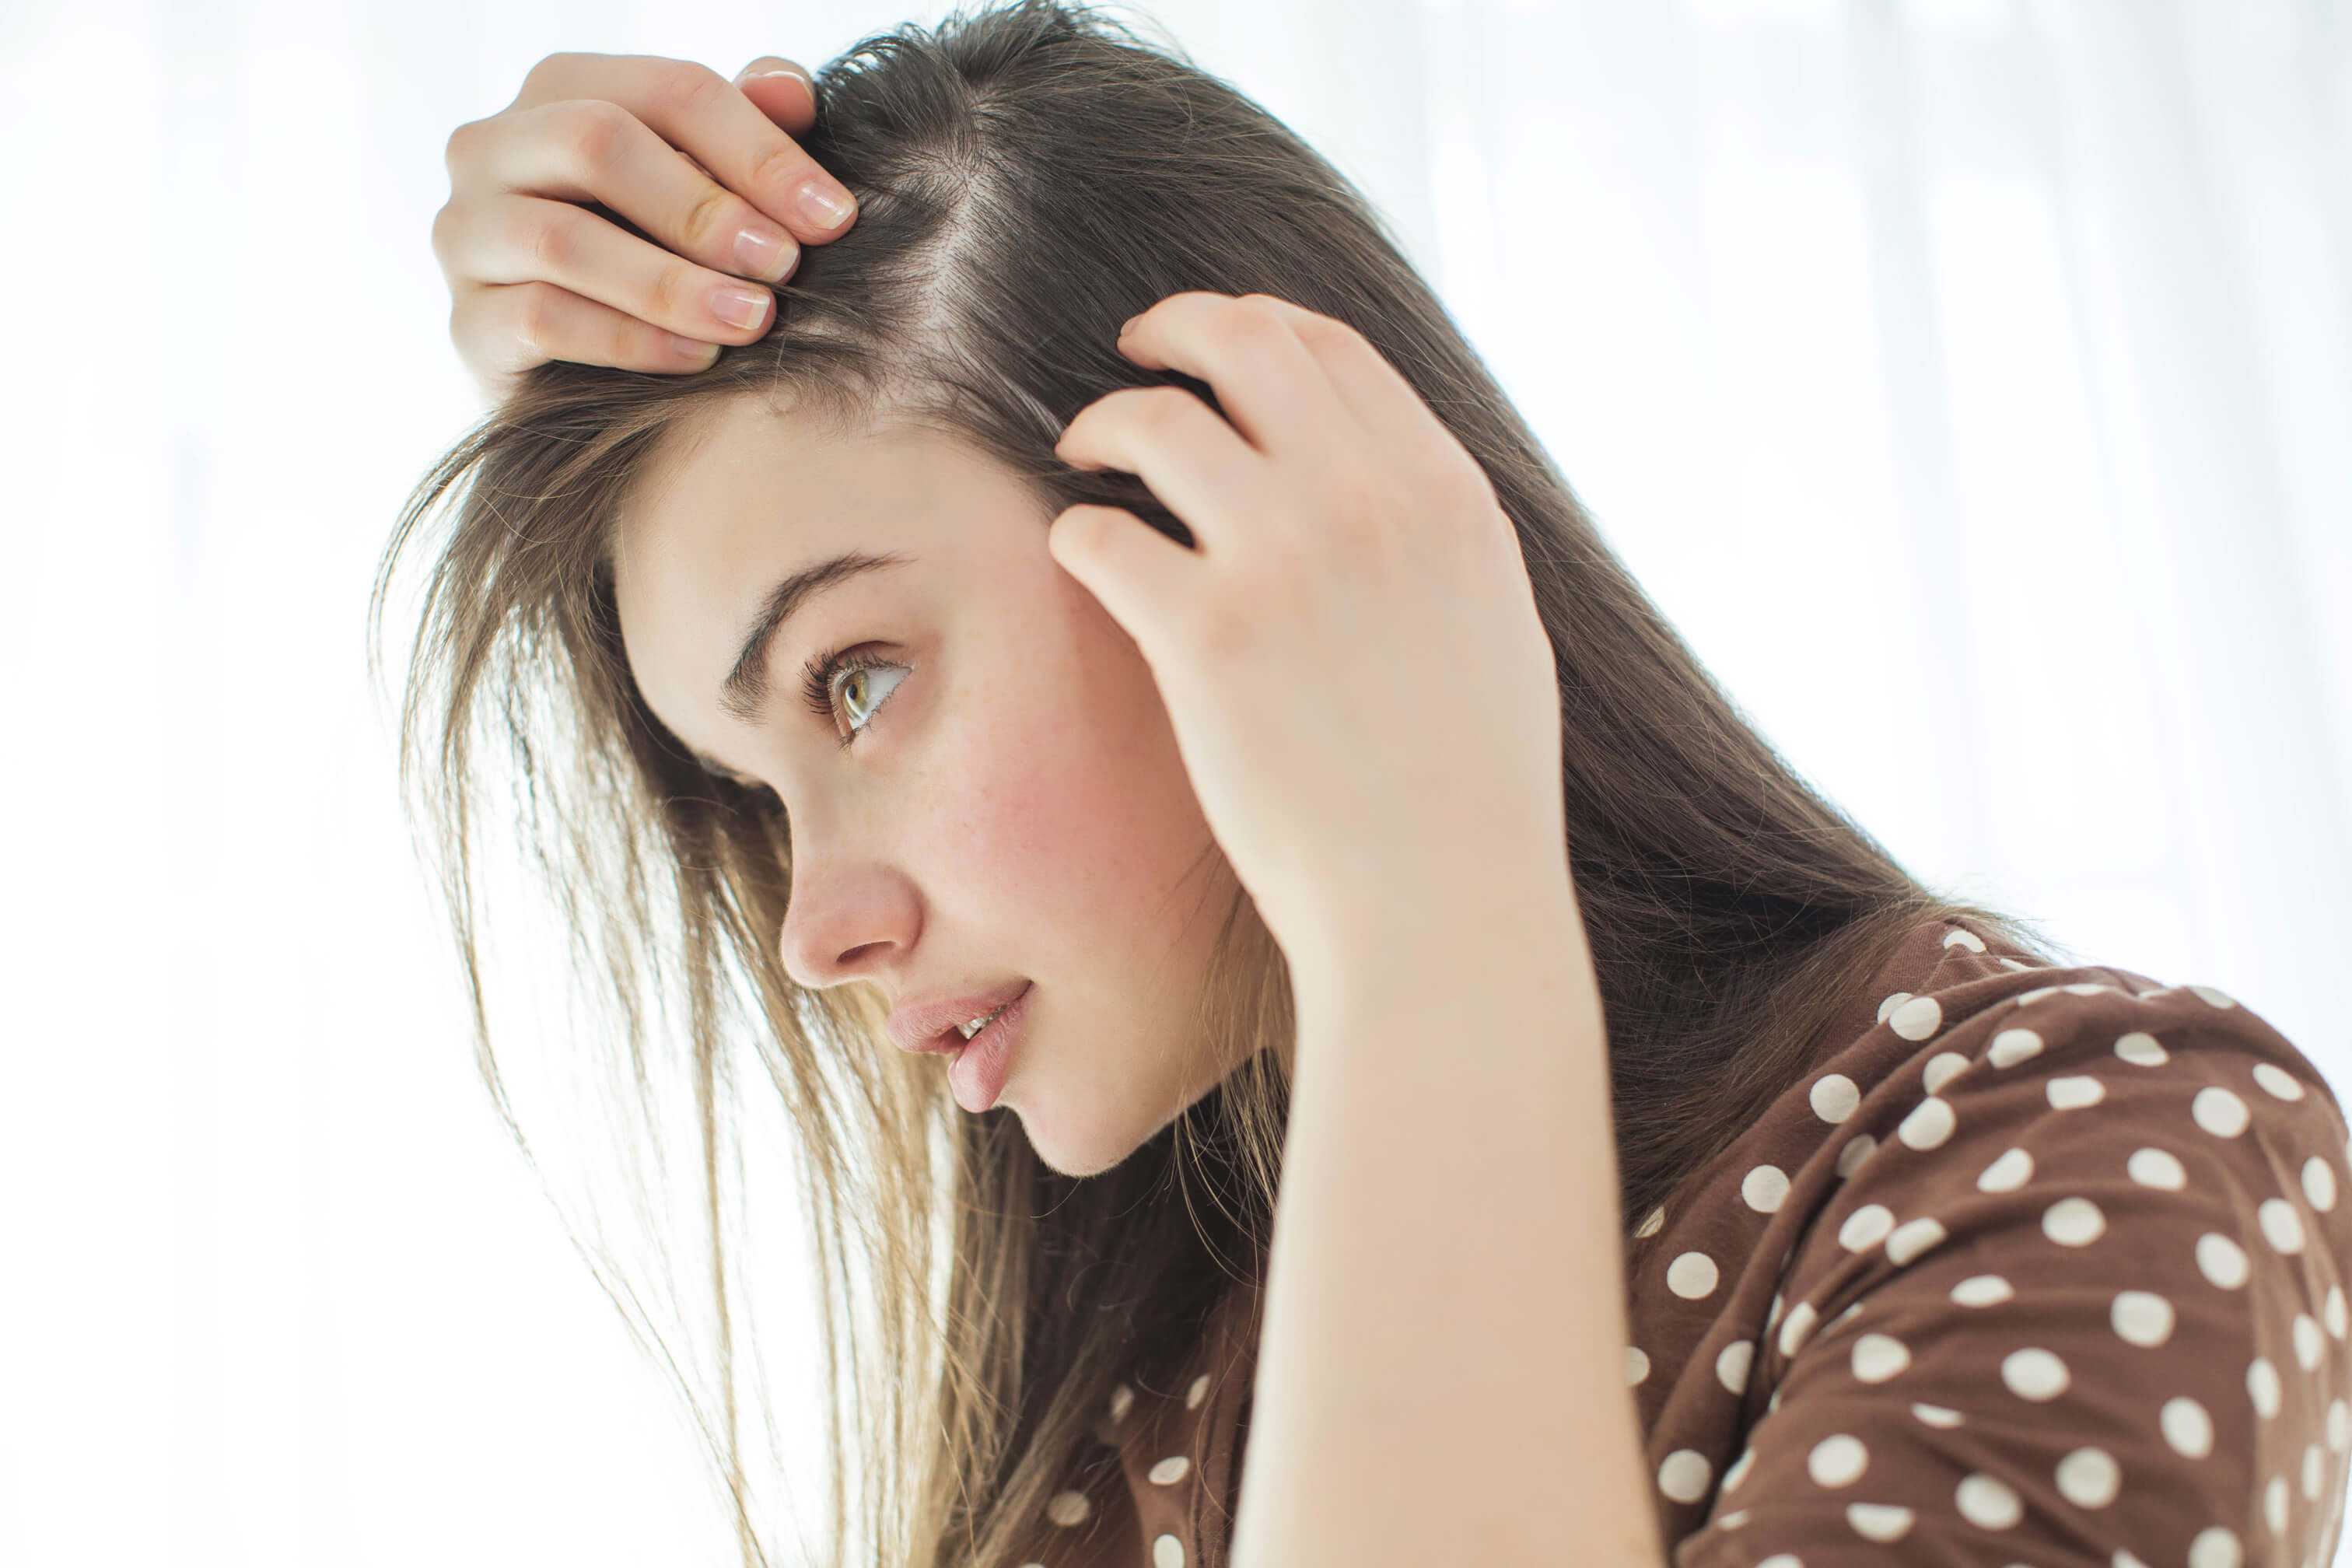 Как использовать масло тмина для волос в домашних условиях 20 эффективны масок для улучшения и восстановления волос Тминное масло помогает прекратить чрезмерное выпадение ослабленных волос Но целесообразно соблюдать рекомендации о регулярности проведения